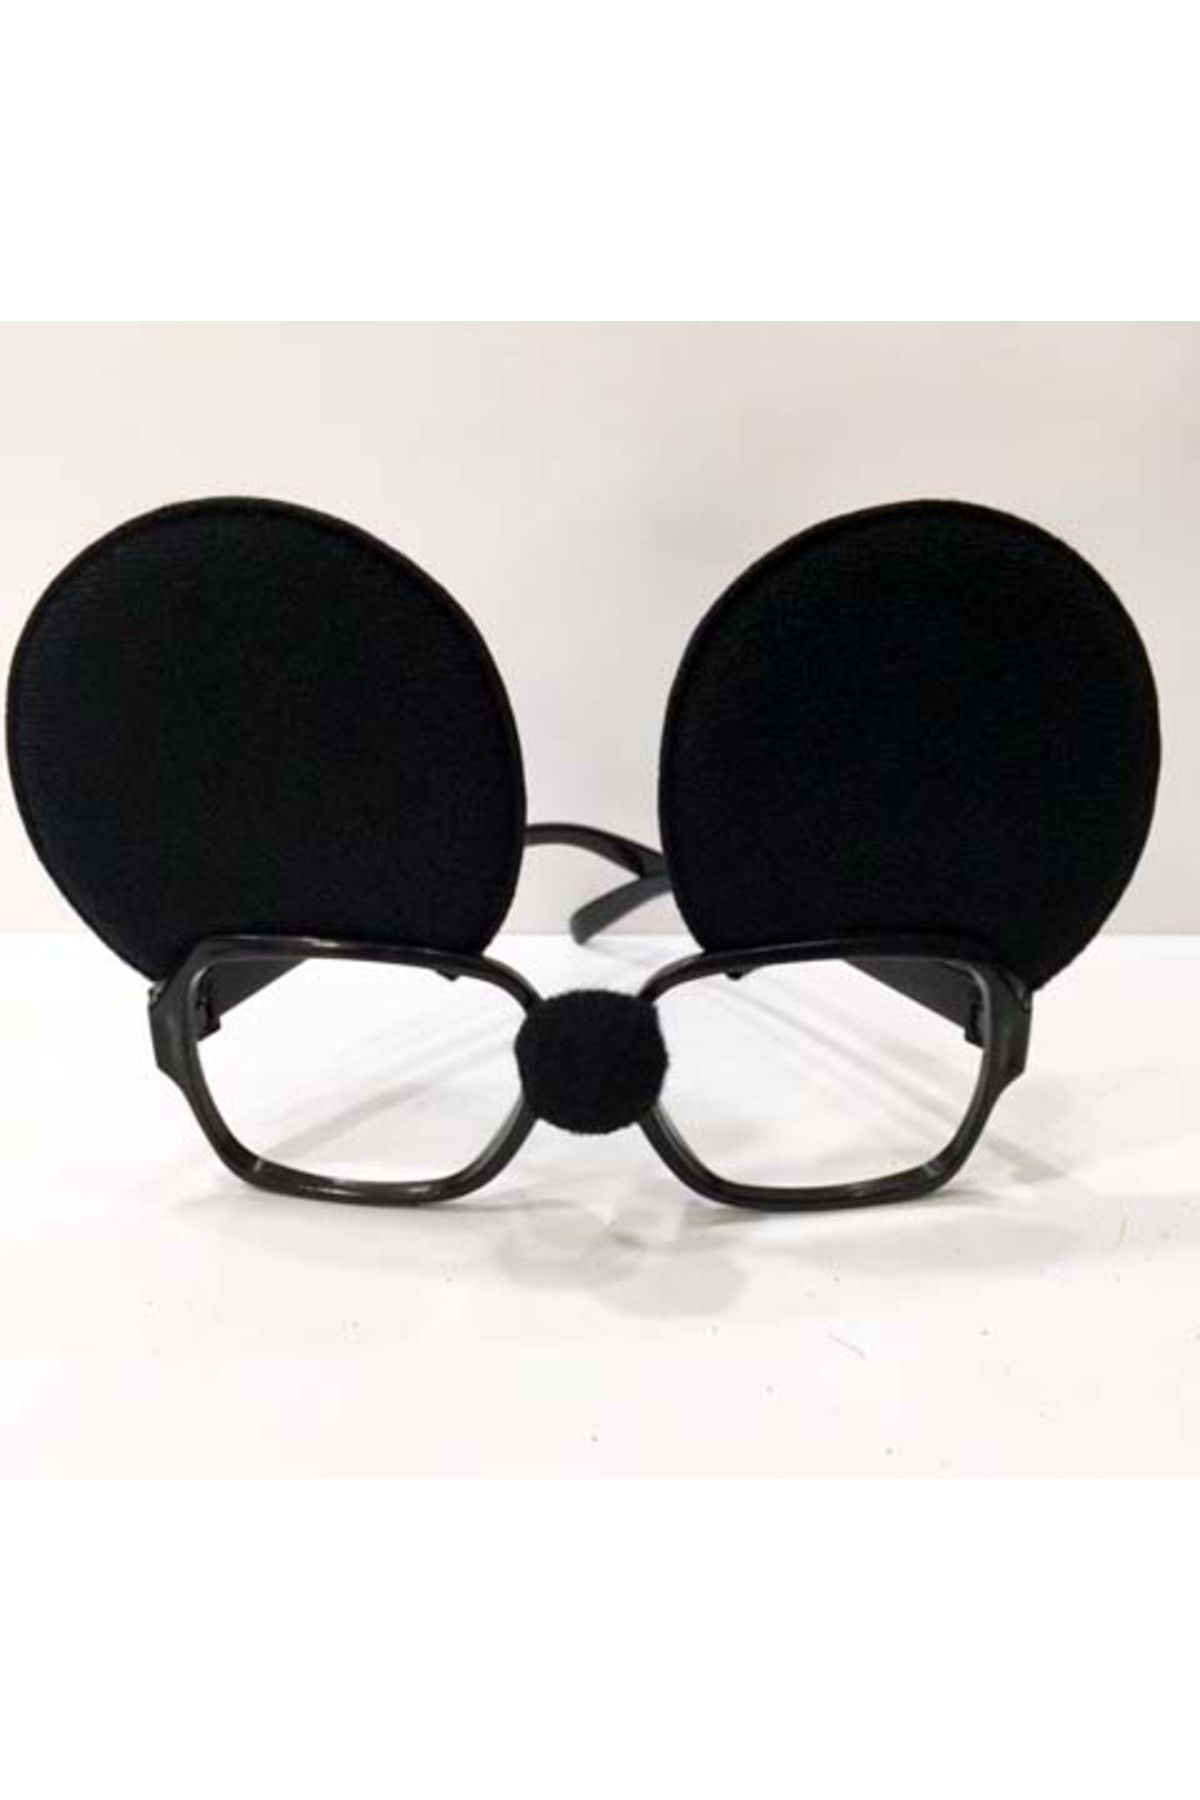 Go İthalat Mickey Mouse Gözlüğü (2818)